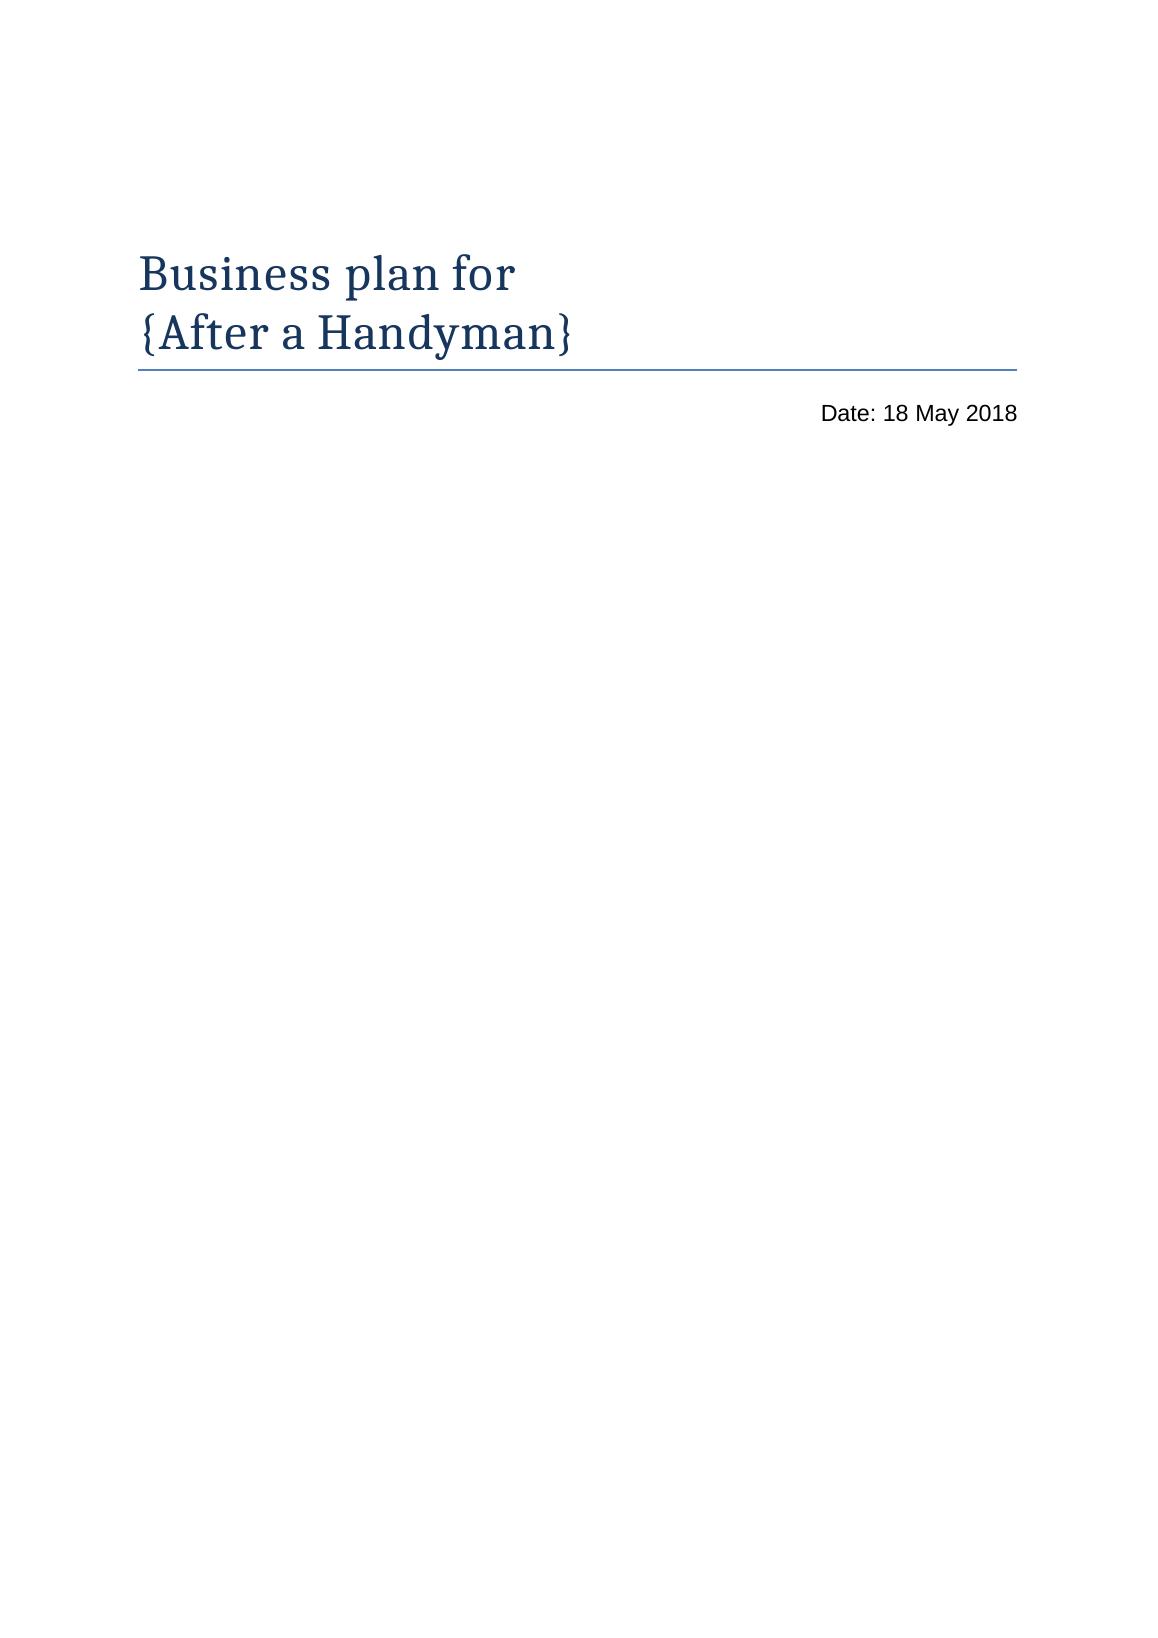 handyman business plan pdf